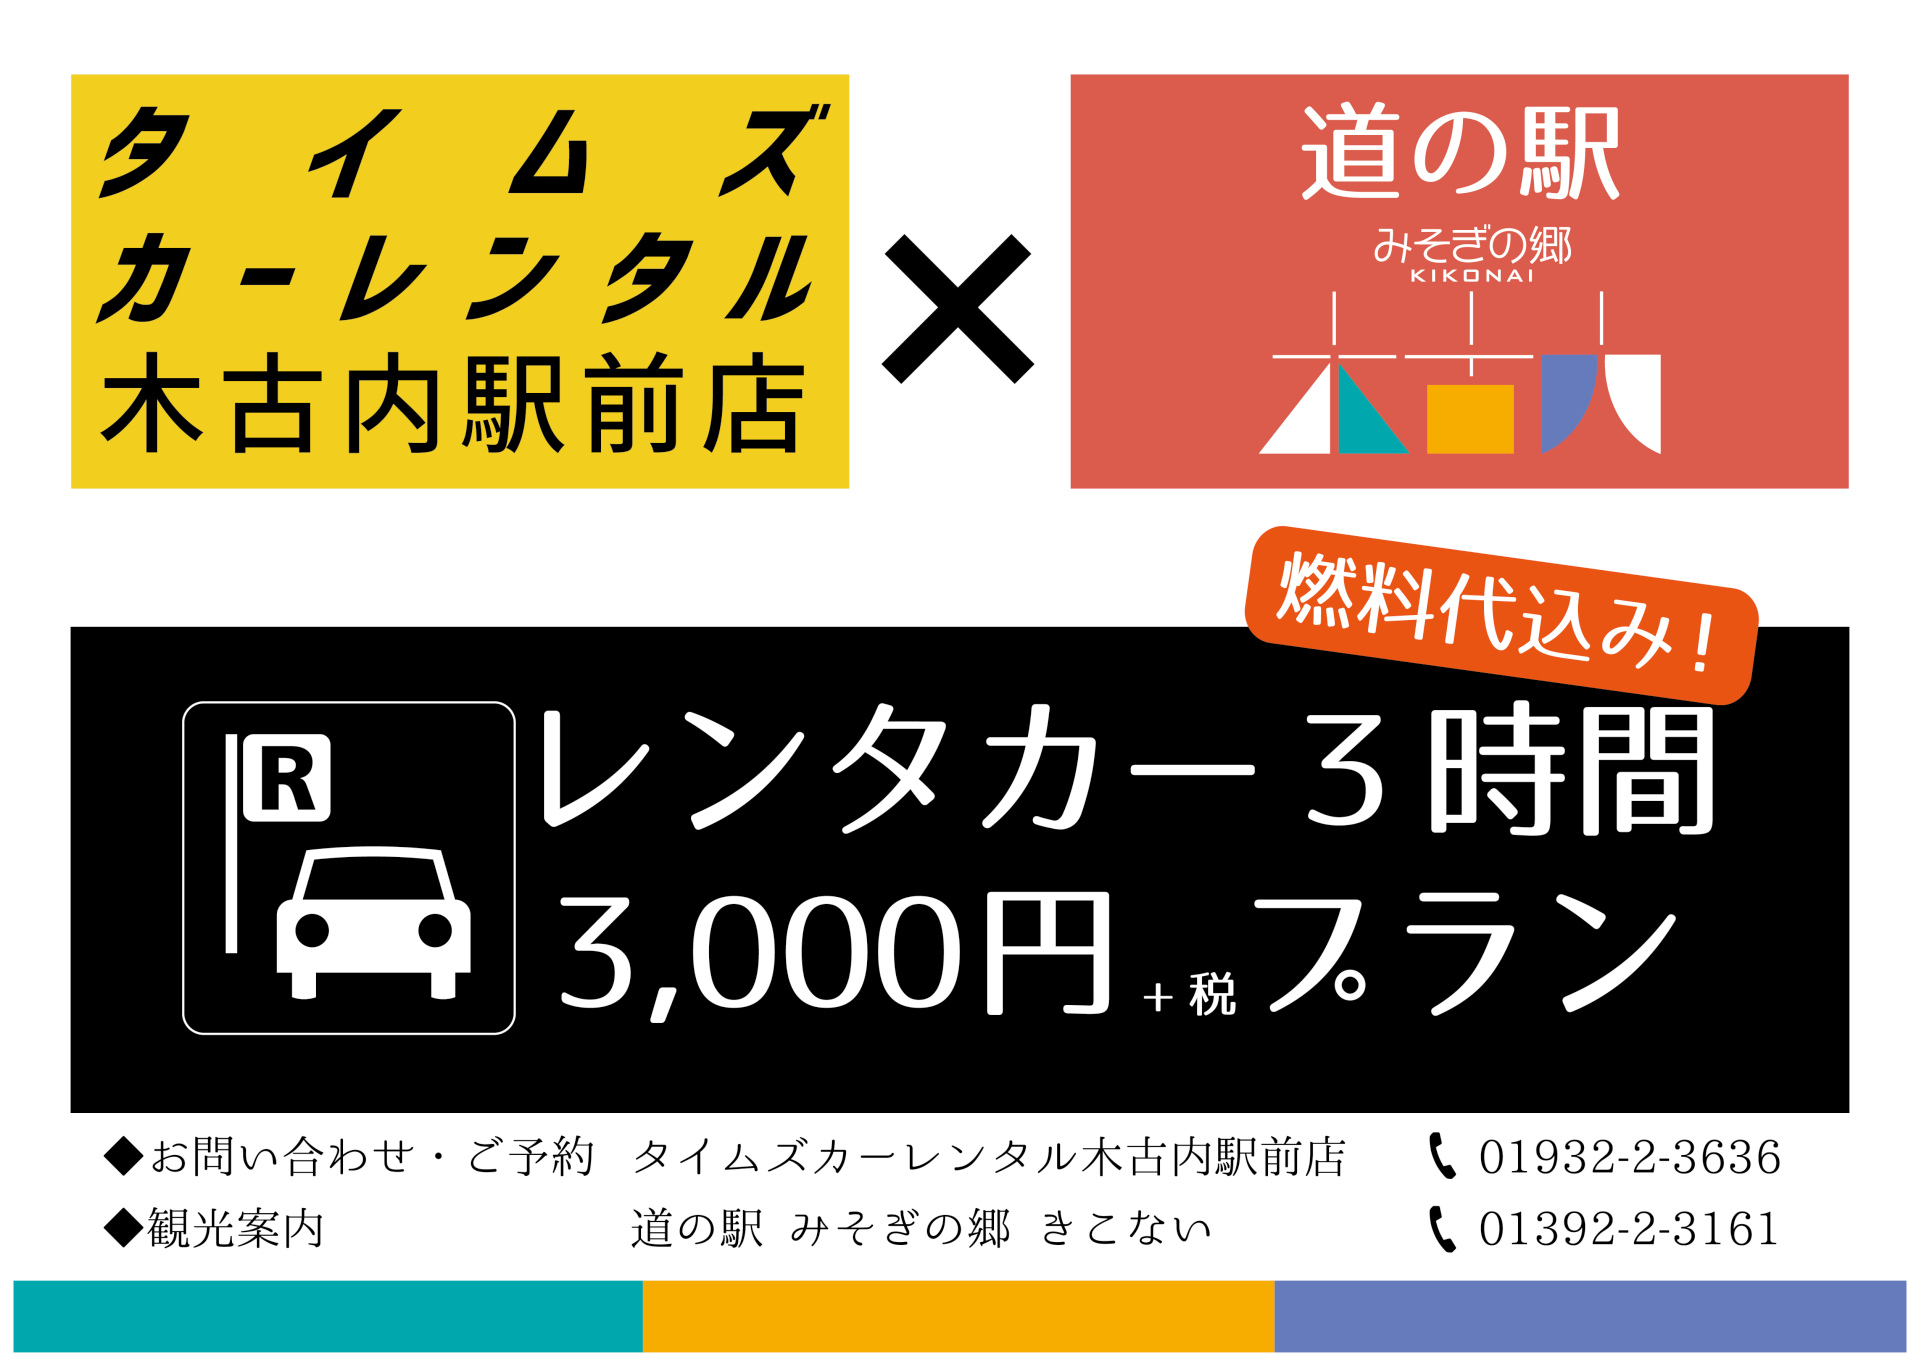 (※2018/4/20追記：新プランへ切り替わります) レンタカー3時間3,000円プラン 2018-2019シーズンも継続決定！